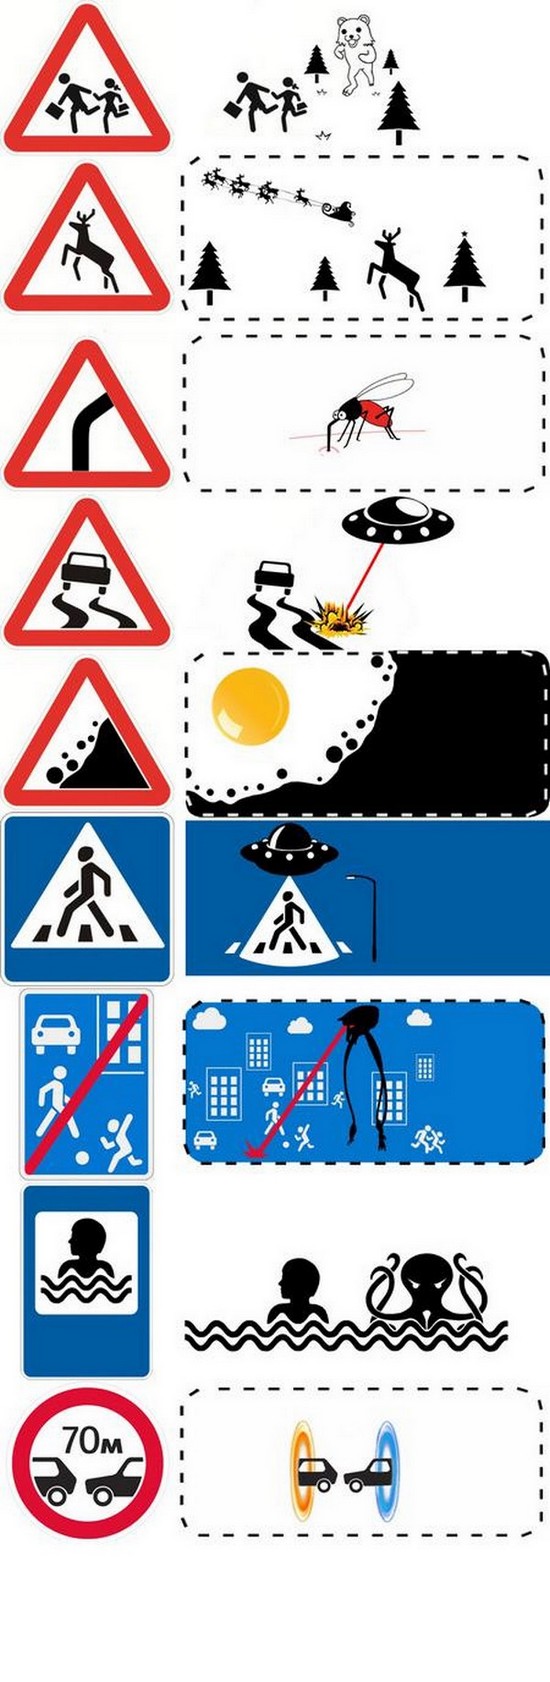 Как появлялись дорожные знаки
